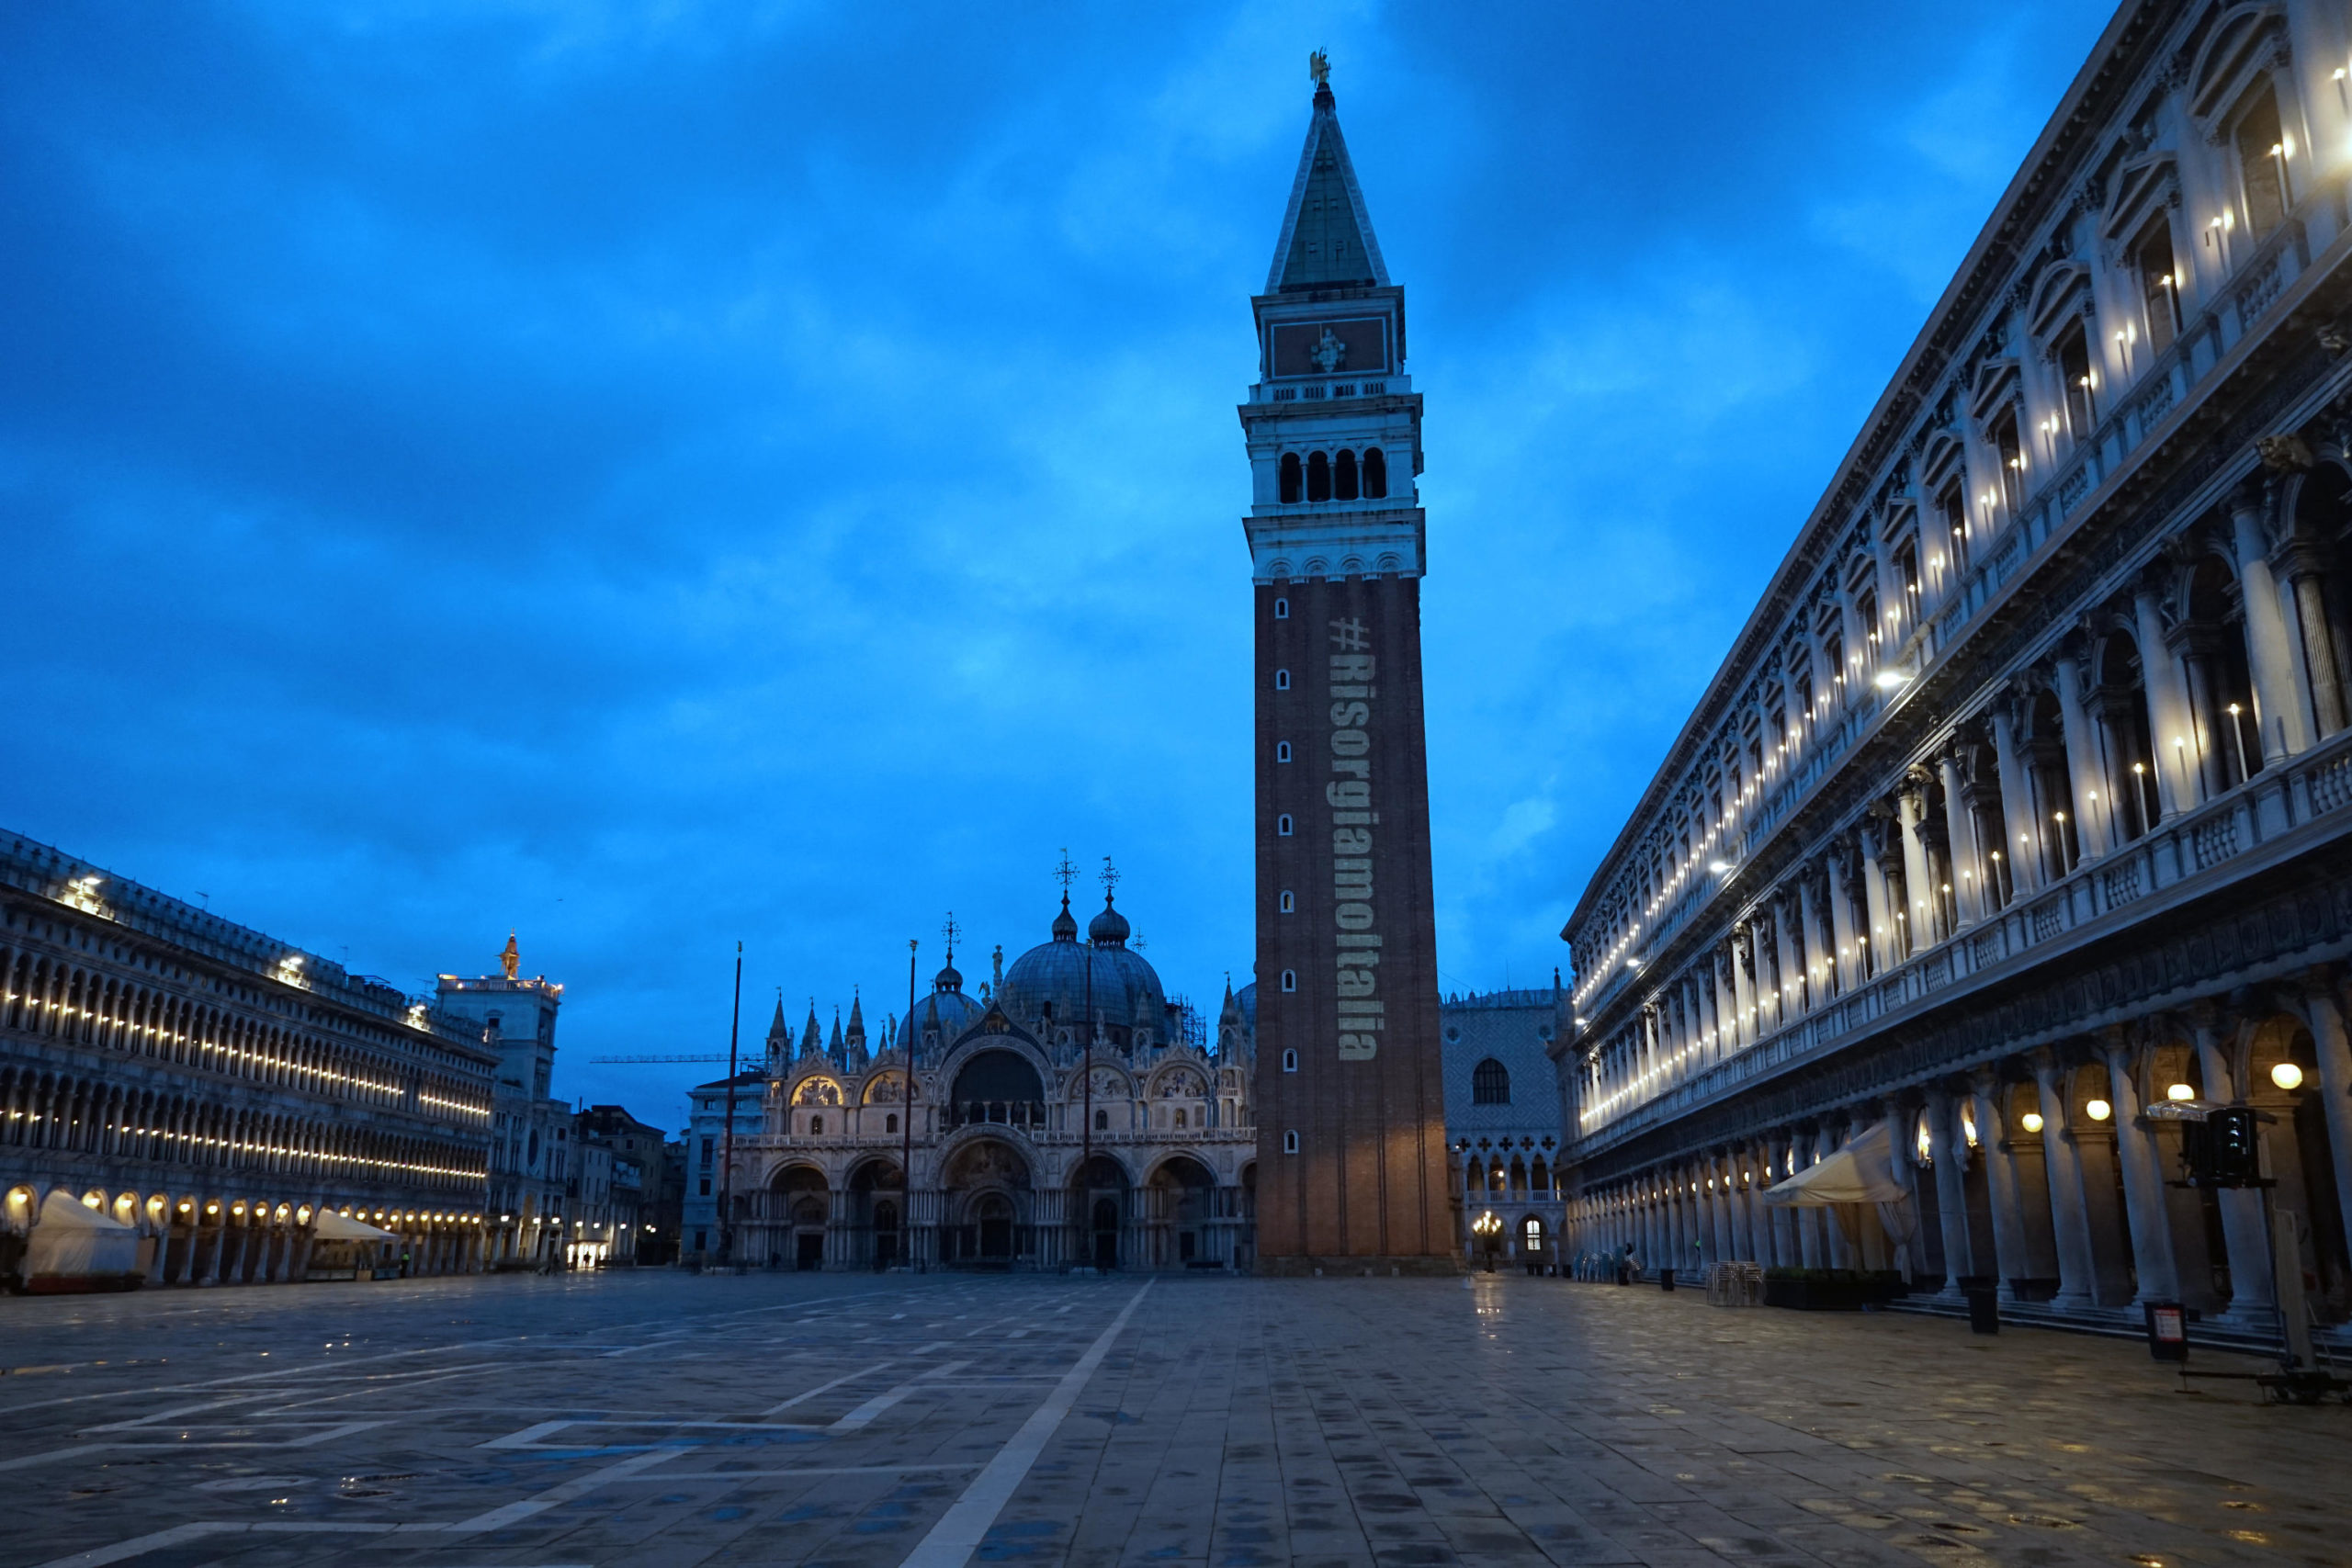 Il campanile della Basilica di San Marco illuminato con la scritta "Risorgiamo Italia"